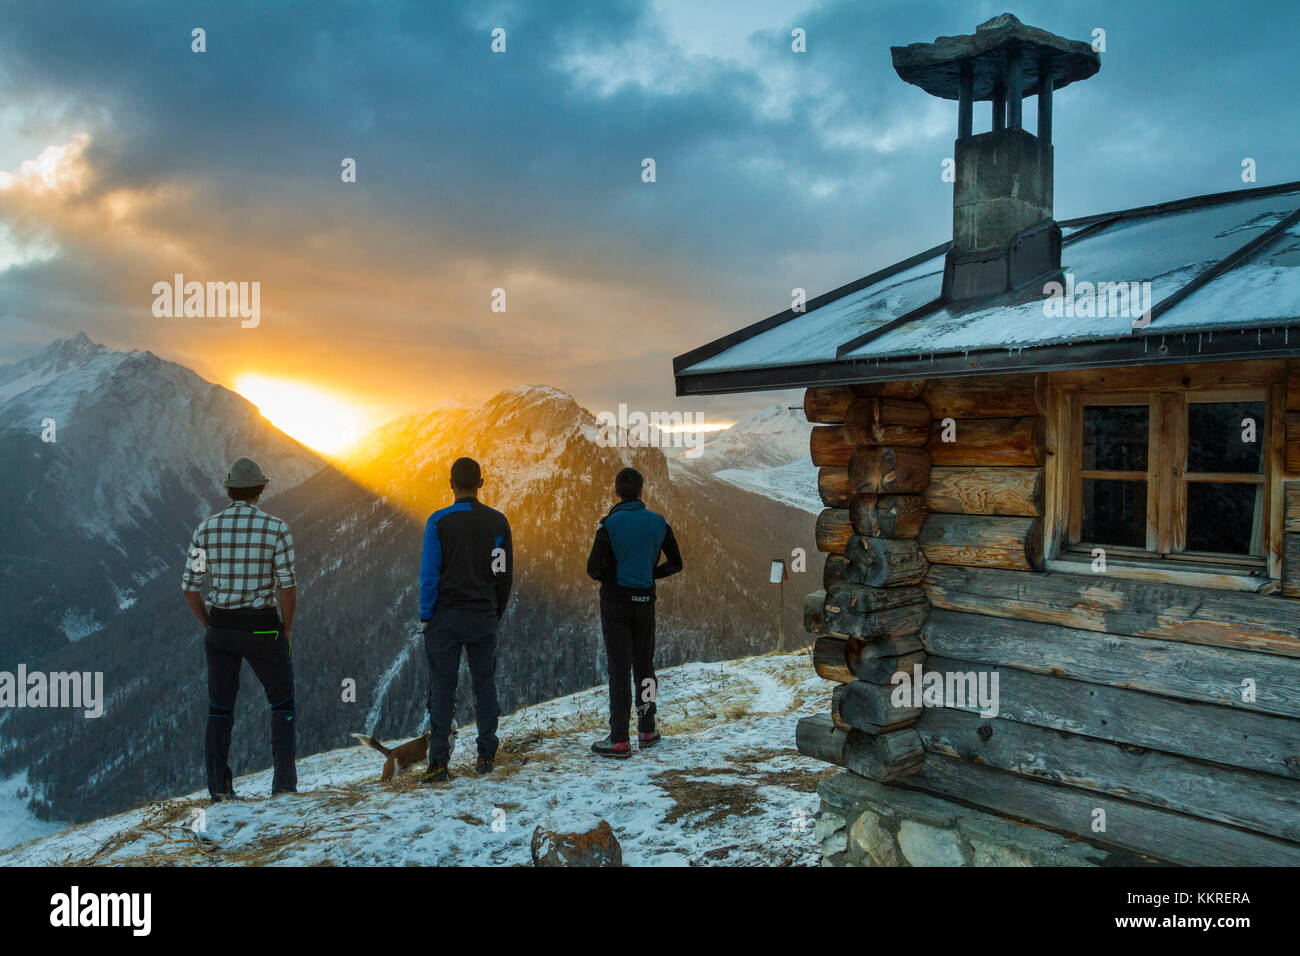 Tres amigos admirando el amanecer desde una cabaña alpina. Livigno, Valtellina, Italia Foto de stock